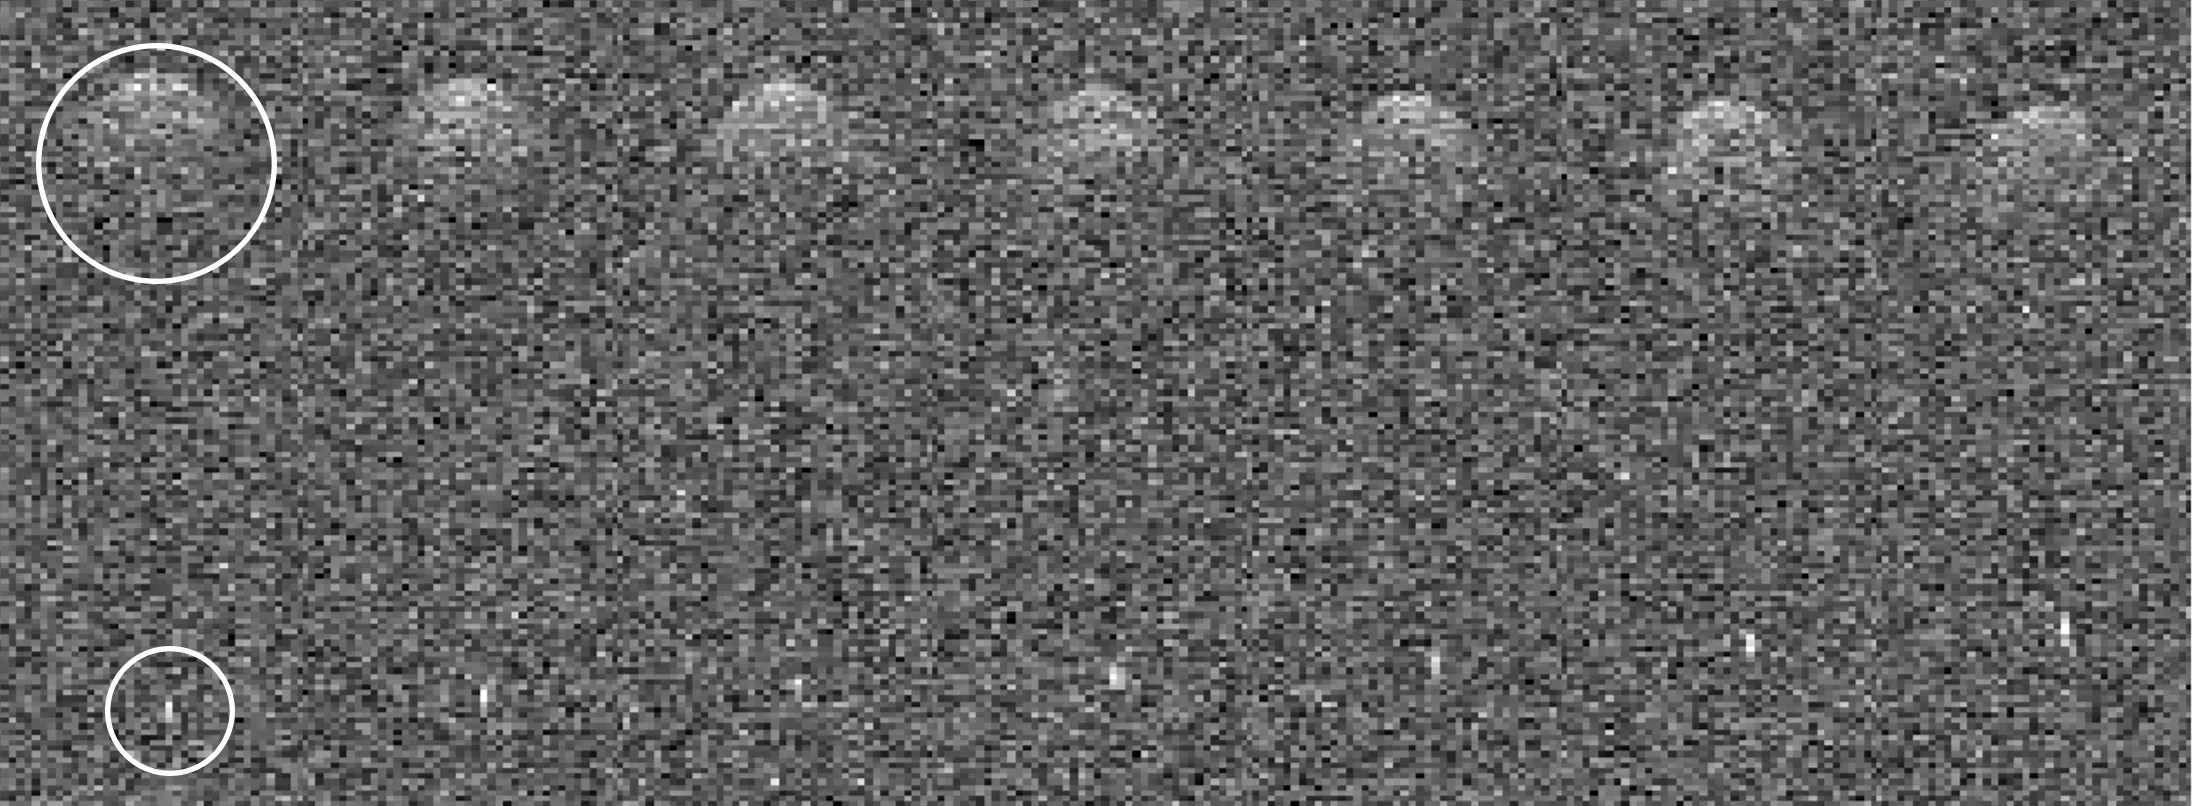 Астероїд 2011 UL21